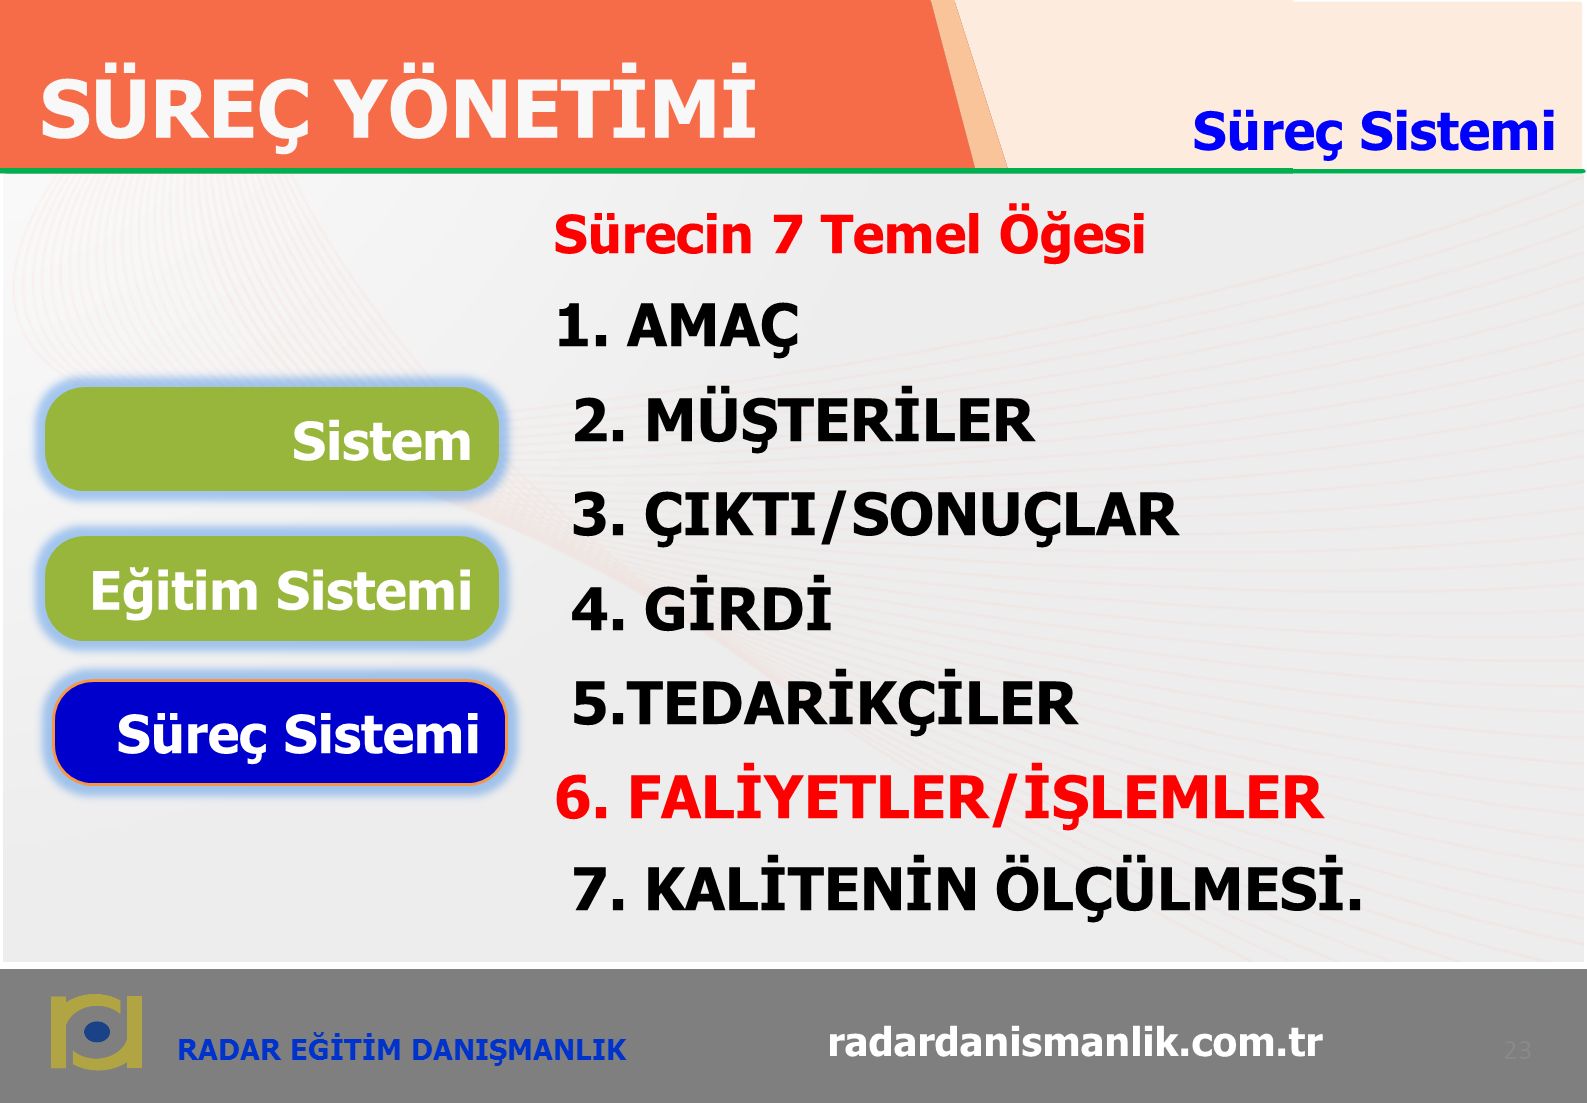 RADAR EĞİTİM DANIŞMANLIK SÜREÇ YÖNETİMİ 23 radardanismanlik.com.tr Sürecin 7 Temel Öğesi 1.